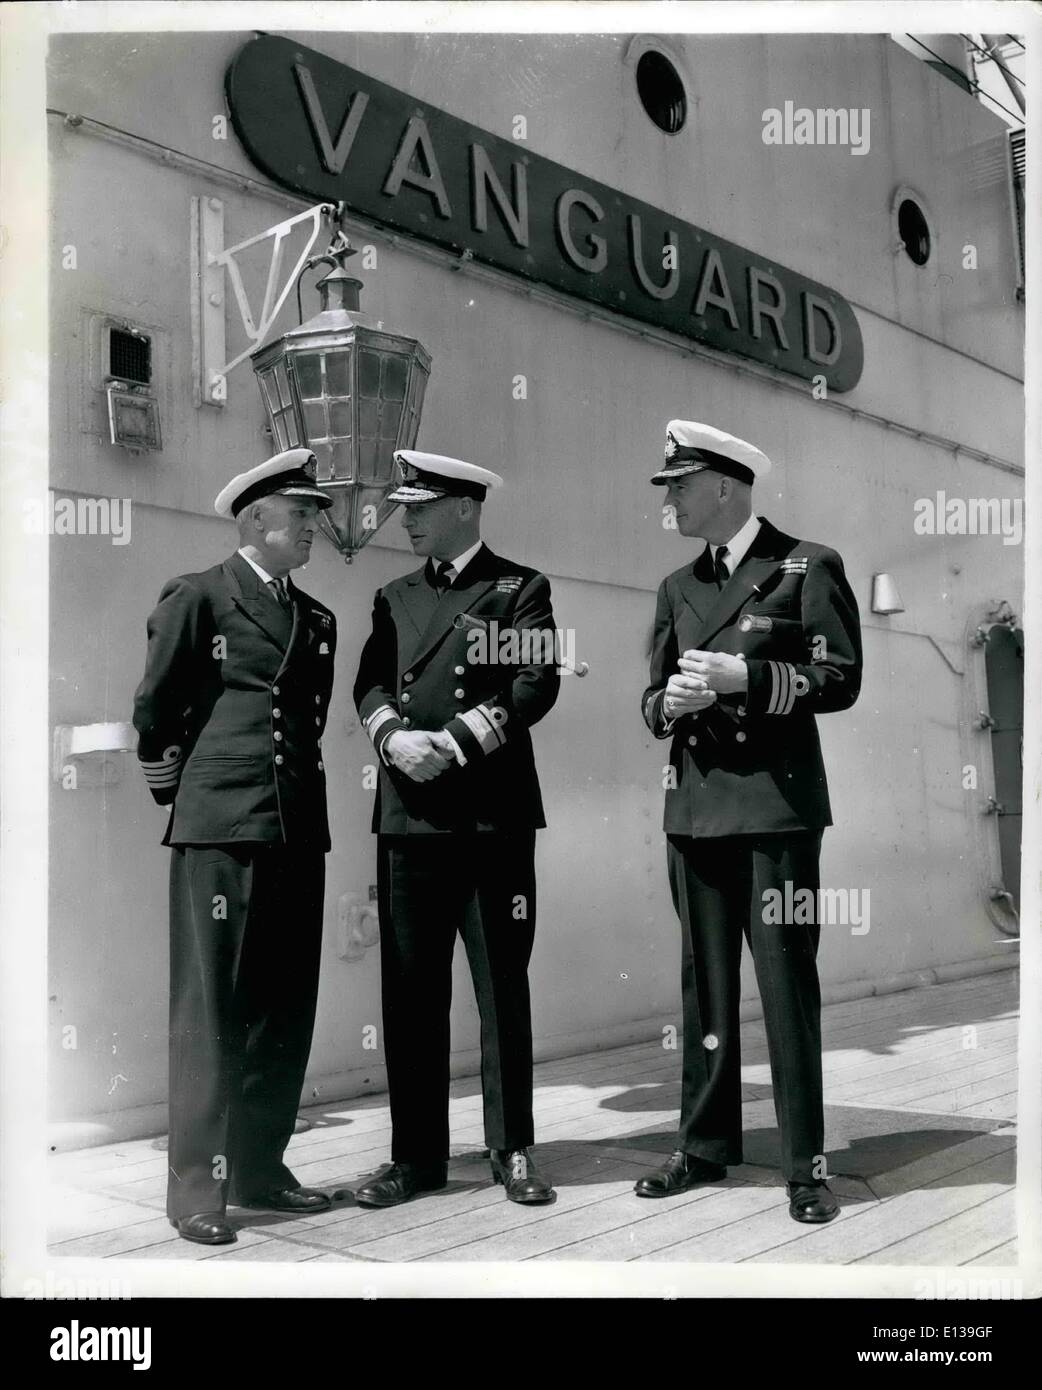 29. Februar 2012 - Presse besuchen HMS Vanguard - in Portsmouth zum letztenmal... Mitglieder der Presse besucht H.M.S Vanguard - Portsmouth heute zum letzten Mal. Das Schiff soll noch in diesem Jahr aufgebrochen werden... Sie ist von 44.500 Tonnen - 0,000,000 - Kosten und hat nie in Aktion - wie sie zu spät für den Krieg im April 1946 abgeschlossen war. Keystone-Fotoshows: Drei Offiziere an Bord des Schiffes heute - L-r: Capt N.N. Fisher OBE. R.N Flagge Kapitän und Senior Officer Reserveflotte, Portsmouth; Flaggoffizier Kommandierender Reserveflotte - Konteradmiral J. Grant D.S.O; und Commander H.J.A. Brooke D.S Stockfoto